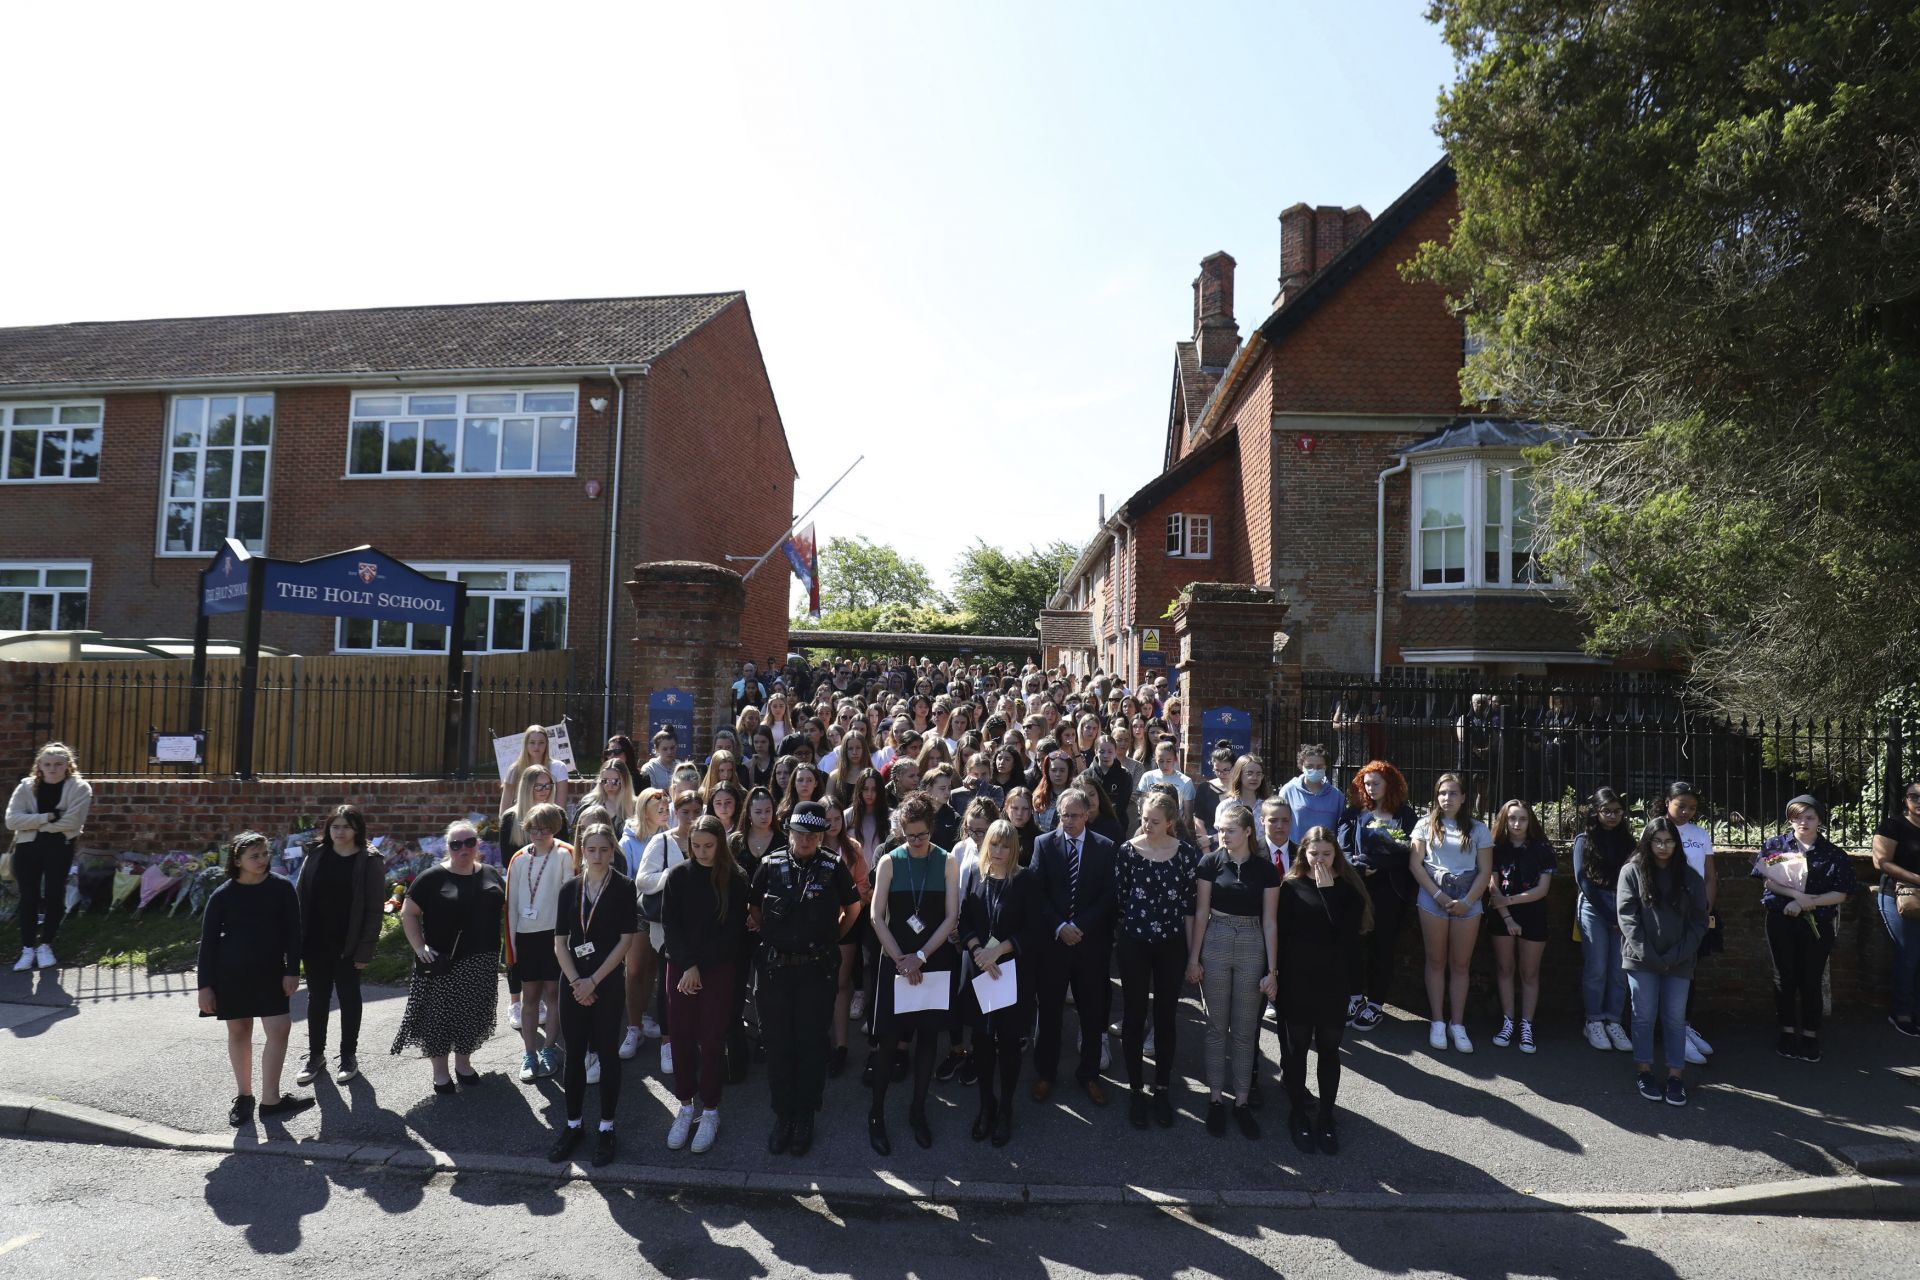 Над 100 ученици, някои от които се държаха за ръце, се събраха пред входа на училището, за да отдадат минута мълчания в памет на любимия си учител